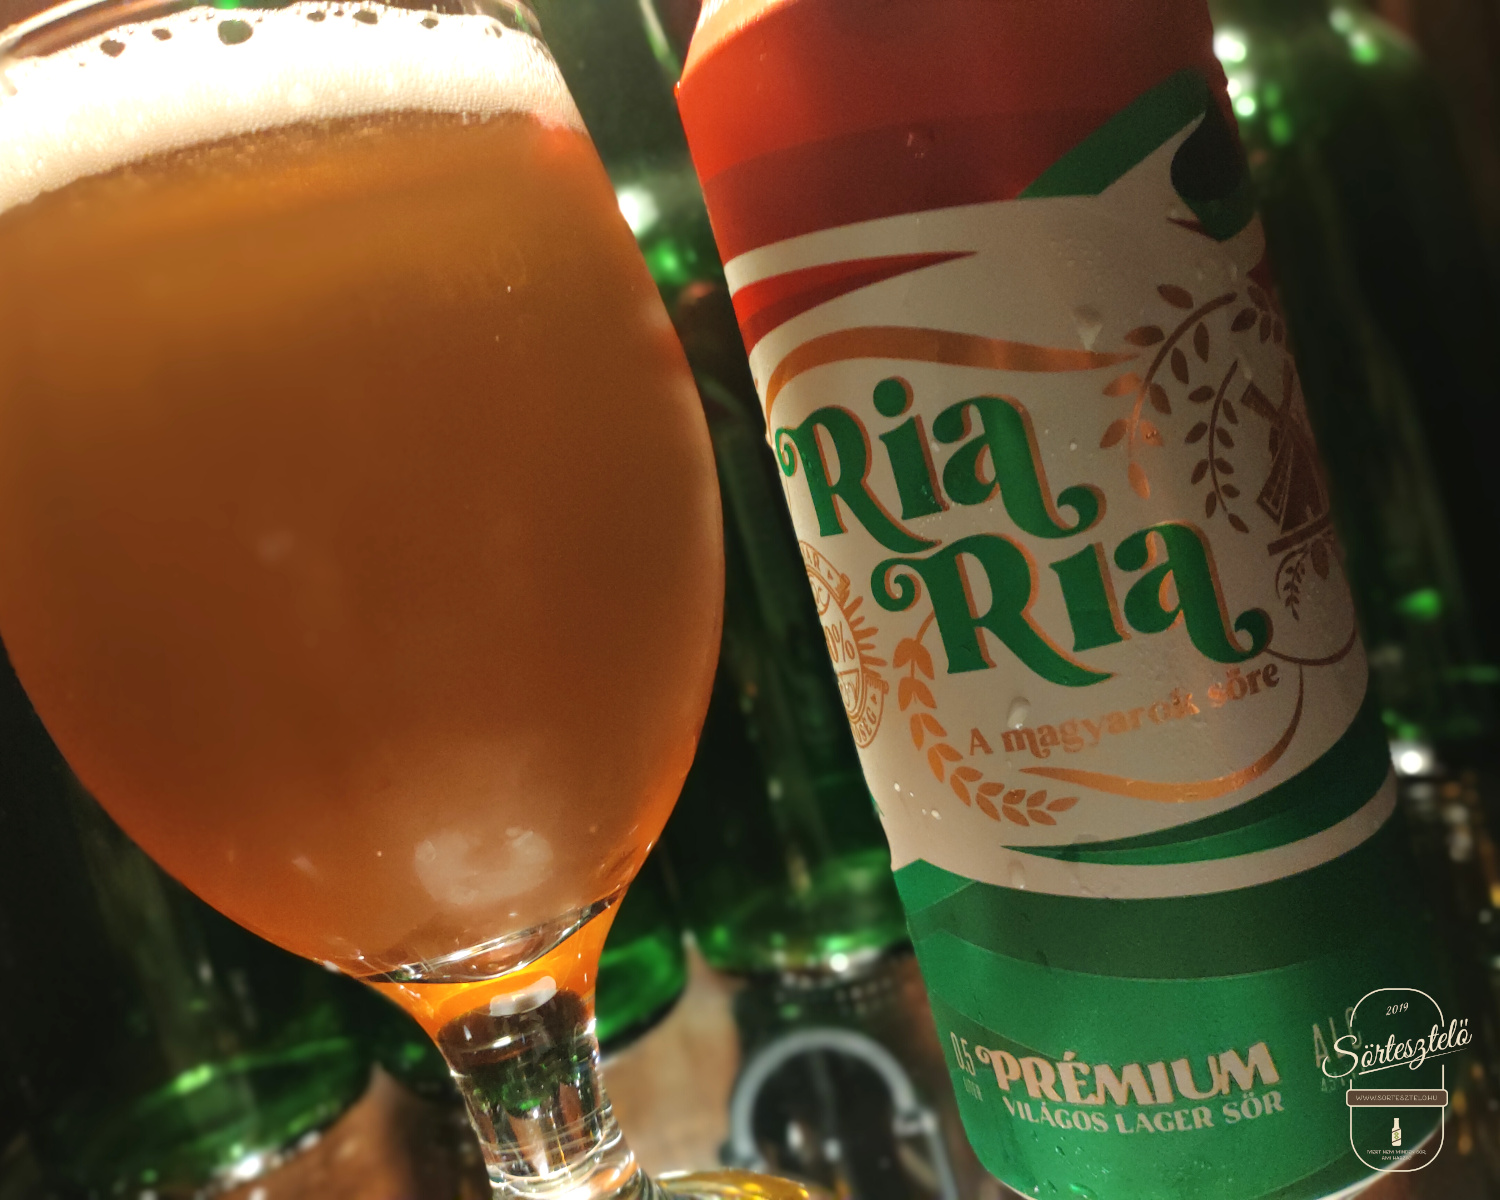 Ria Ria - A magyarok söre